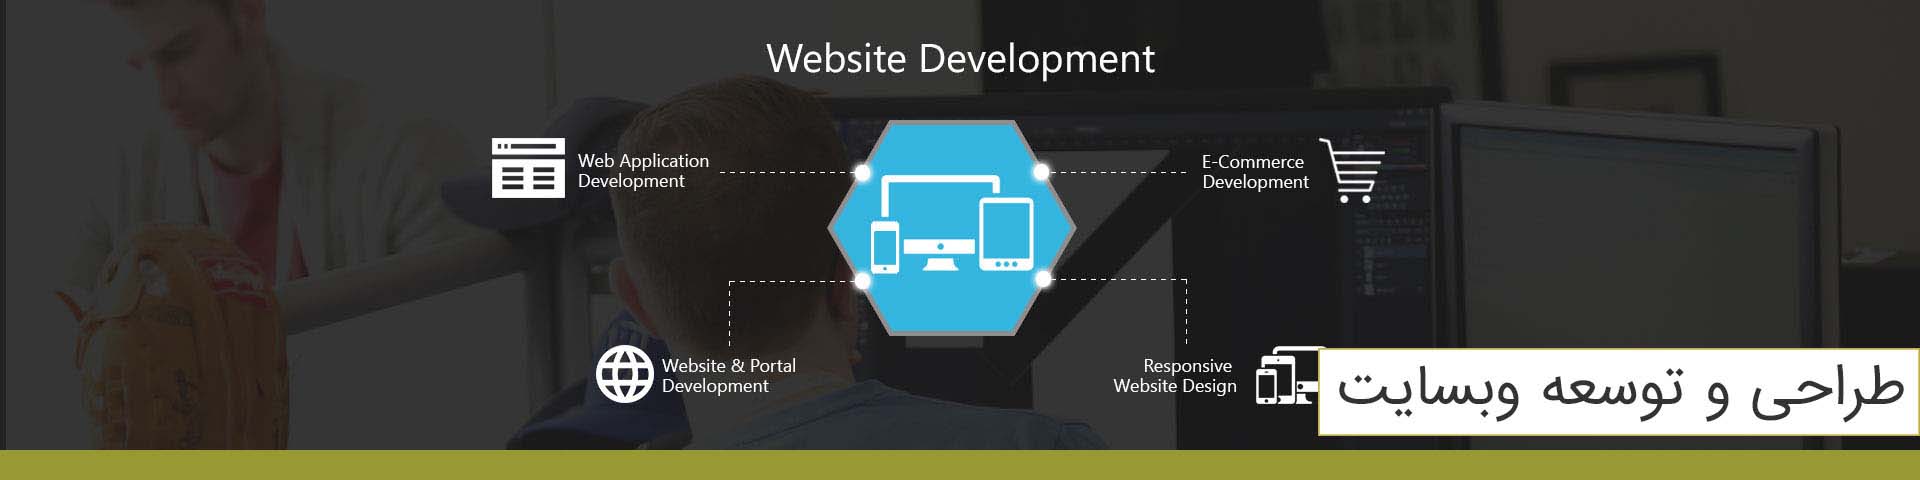 طراحی و توسعه وبسایت